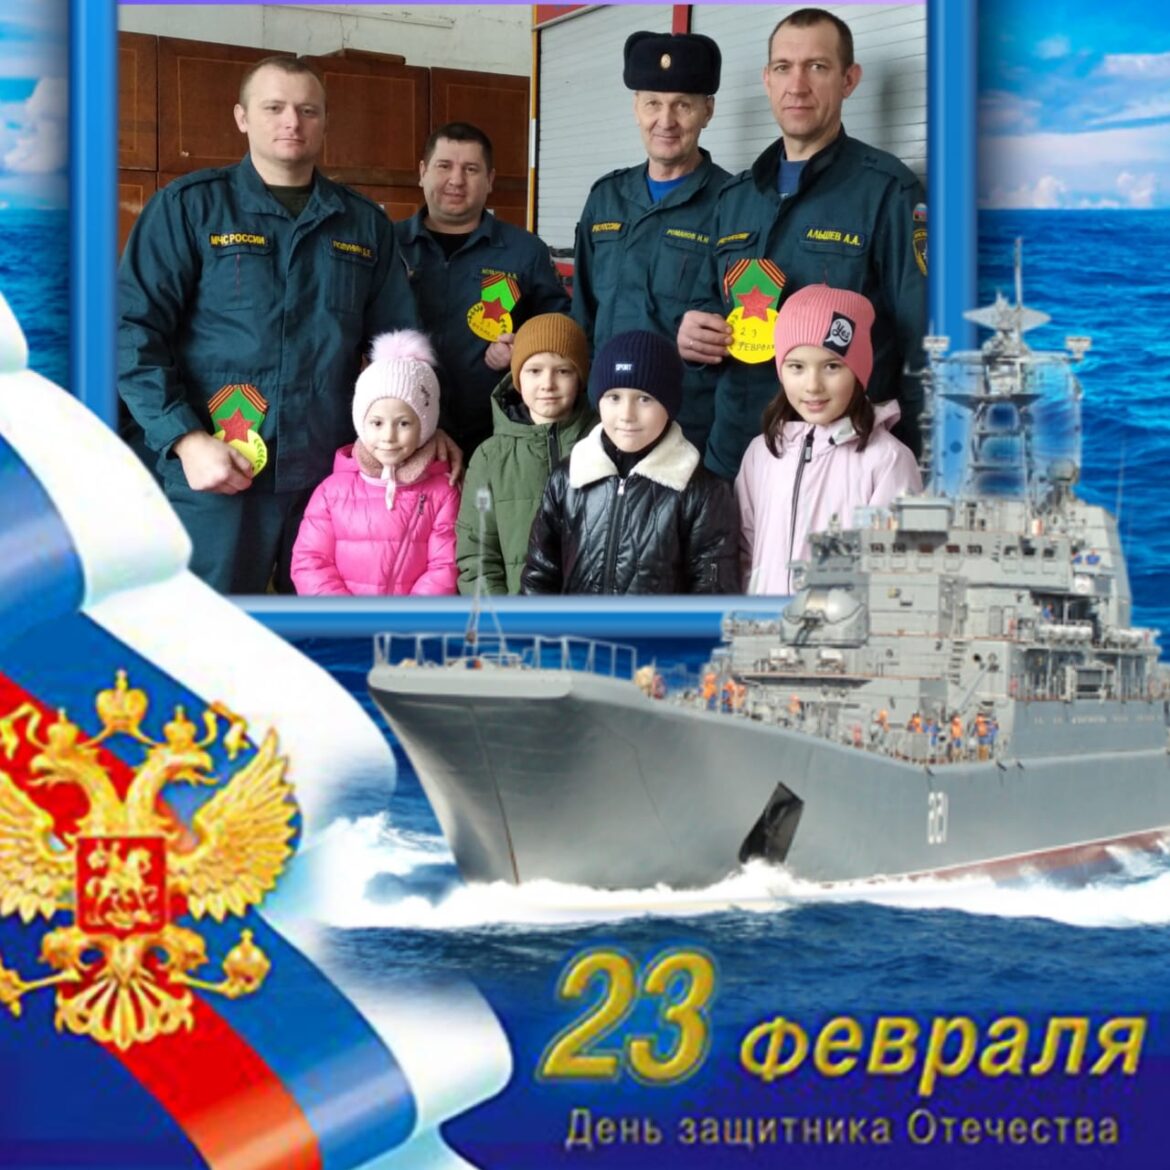 Cотрудники Рябичевского СДК организовали для детей экскурсию в пожарную часть